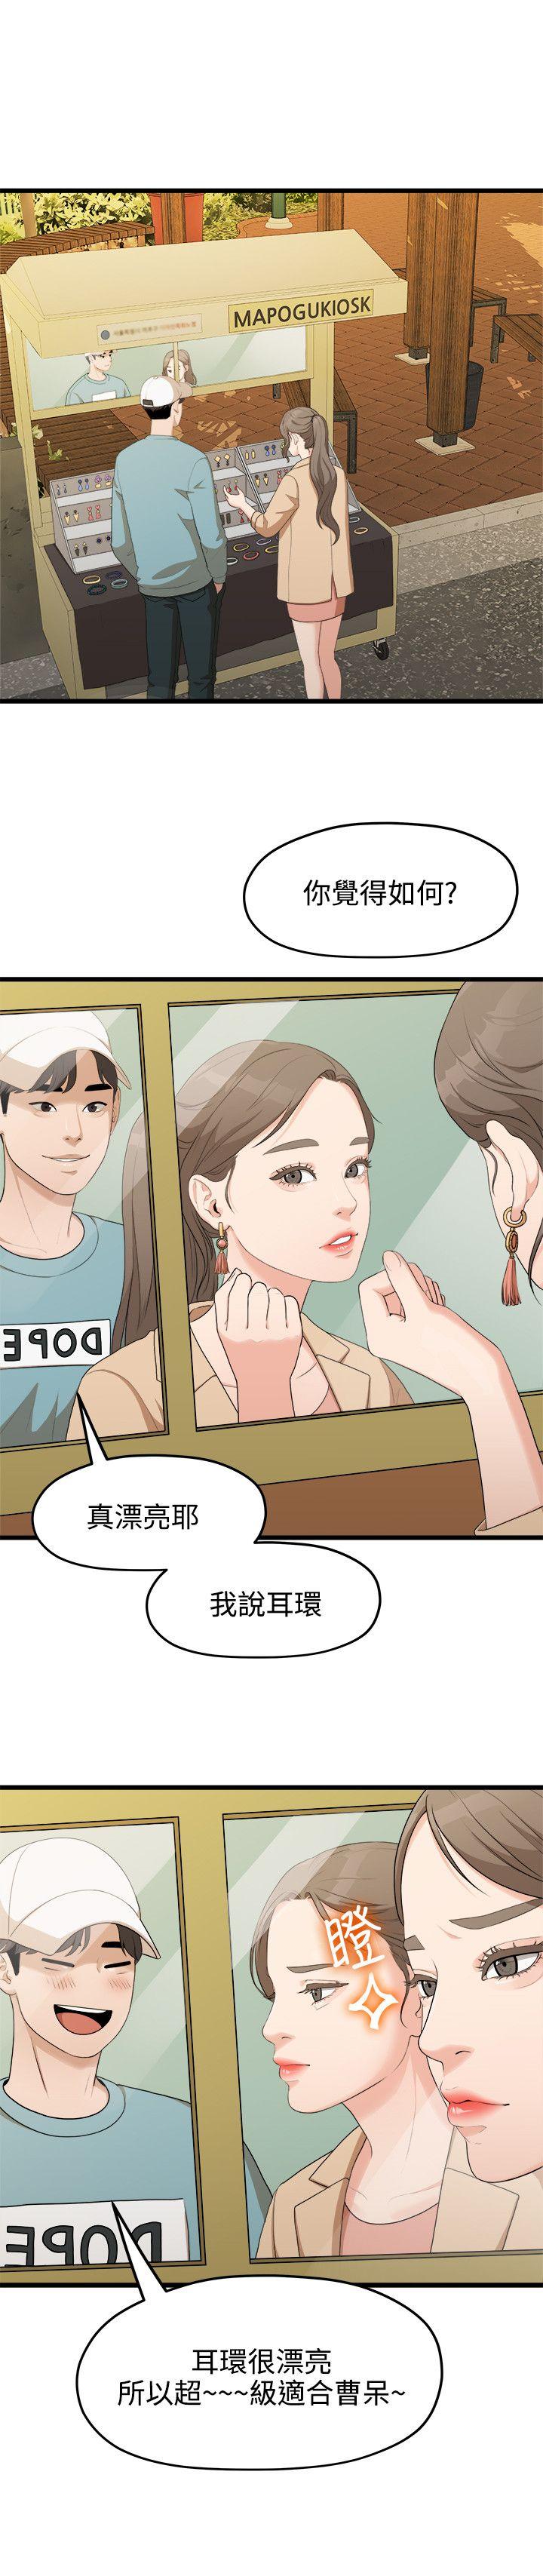 韩国污漫画 我們的非常關系 第6话 9